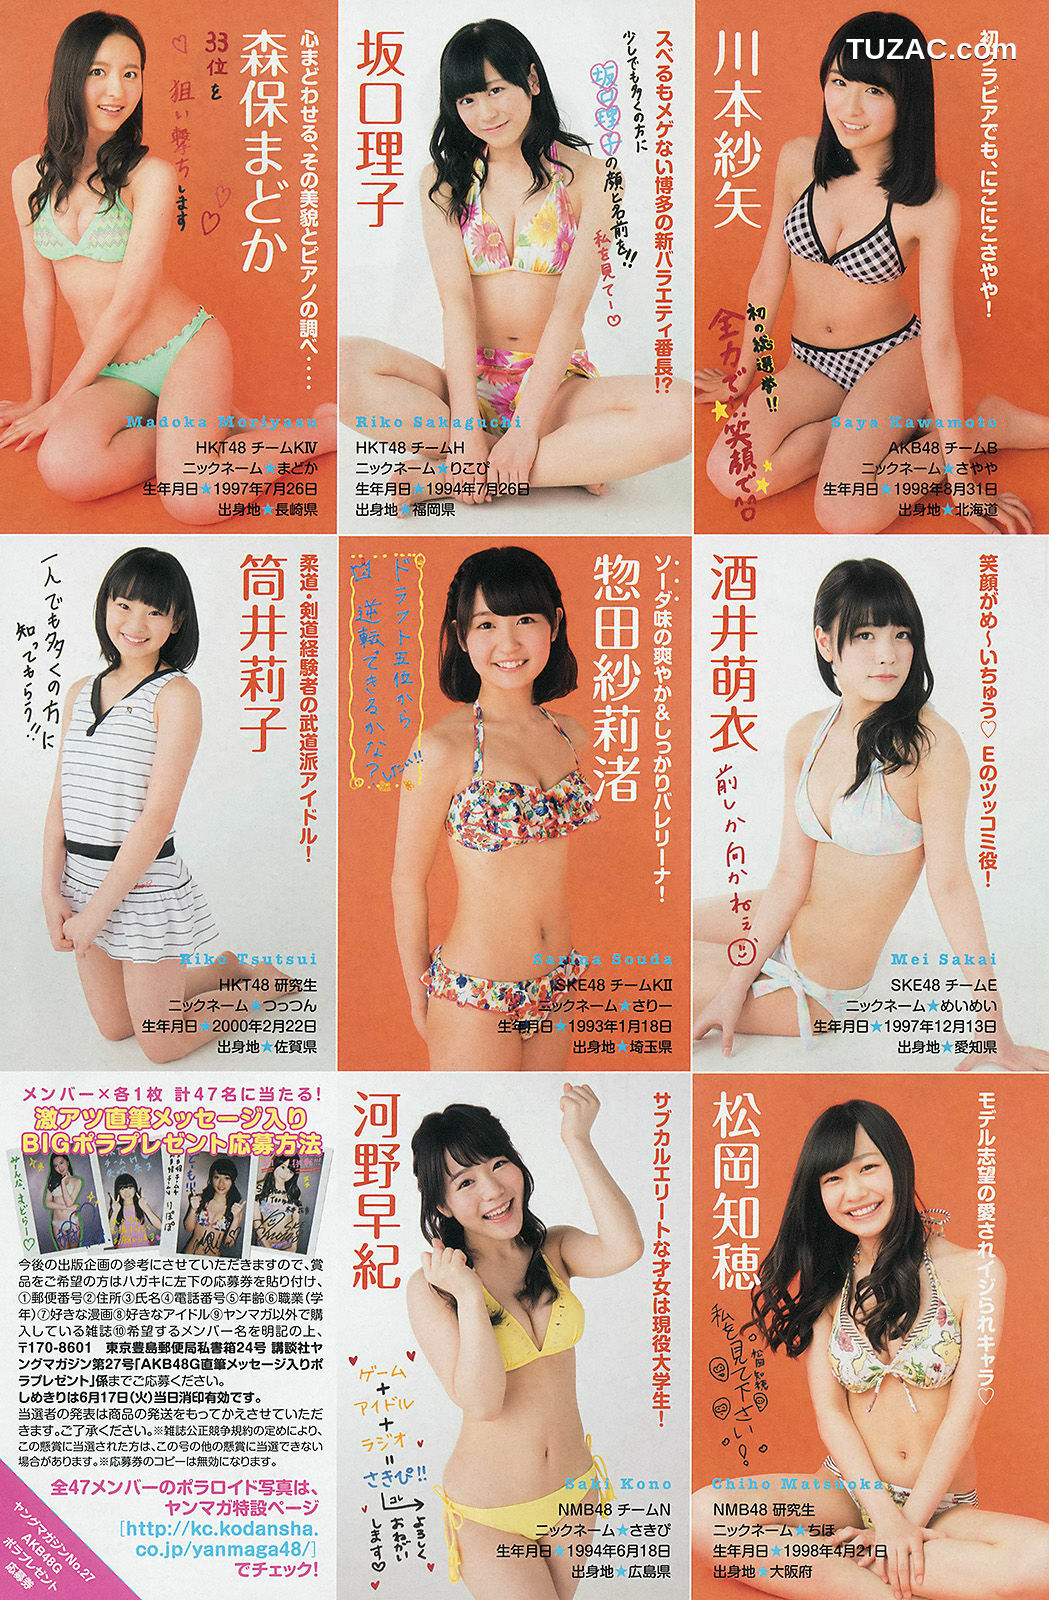 Young Magazine杂志写真_ 渡辺麻友 川栄李奈 2401年No.27 写真杂志[17P]